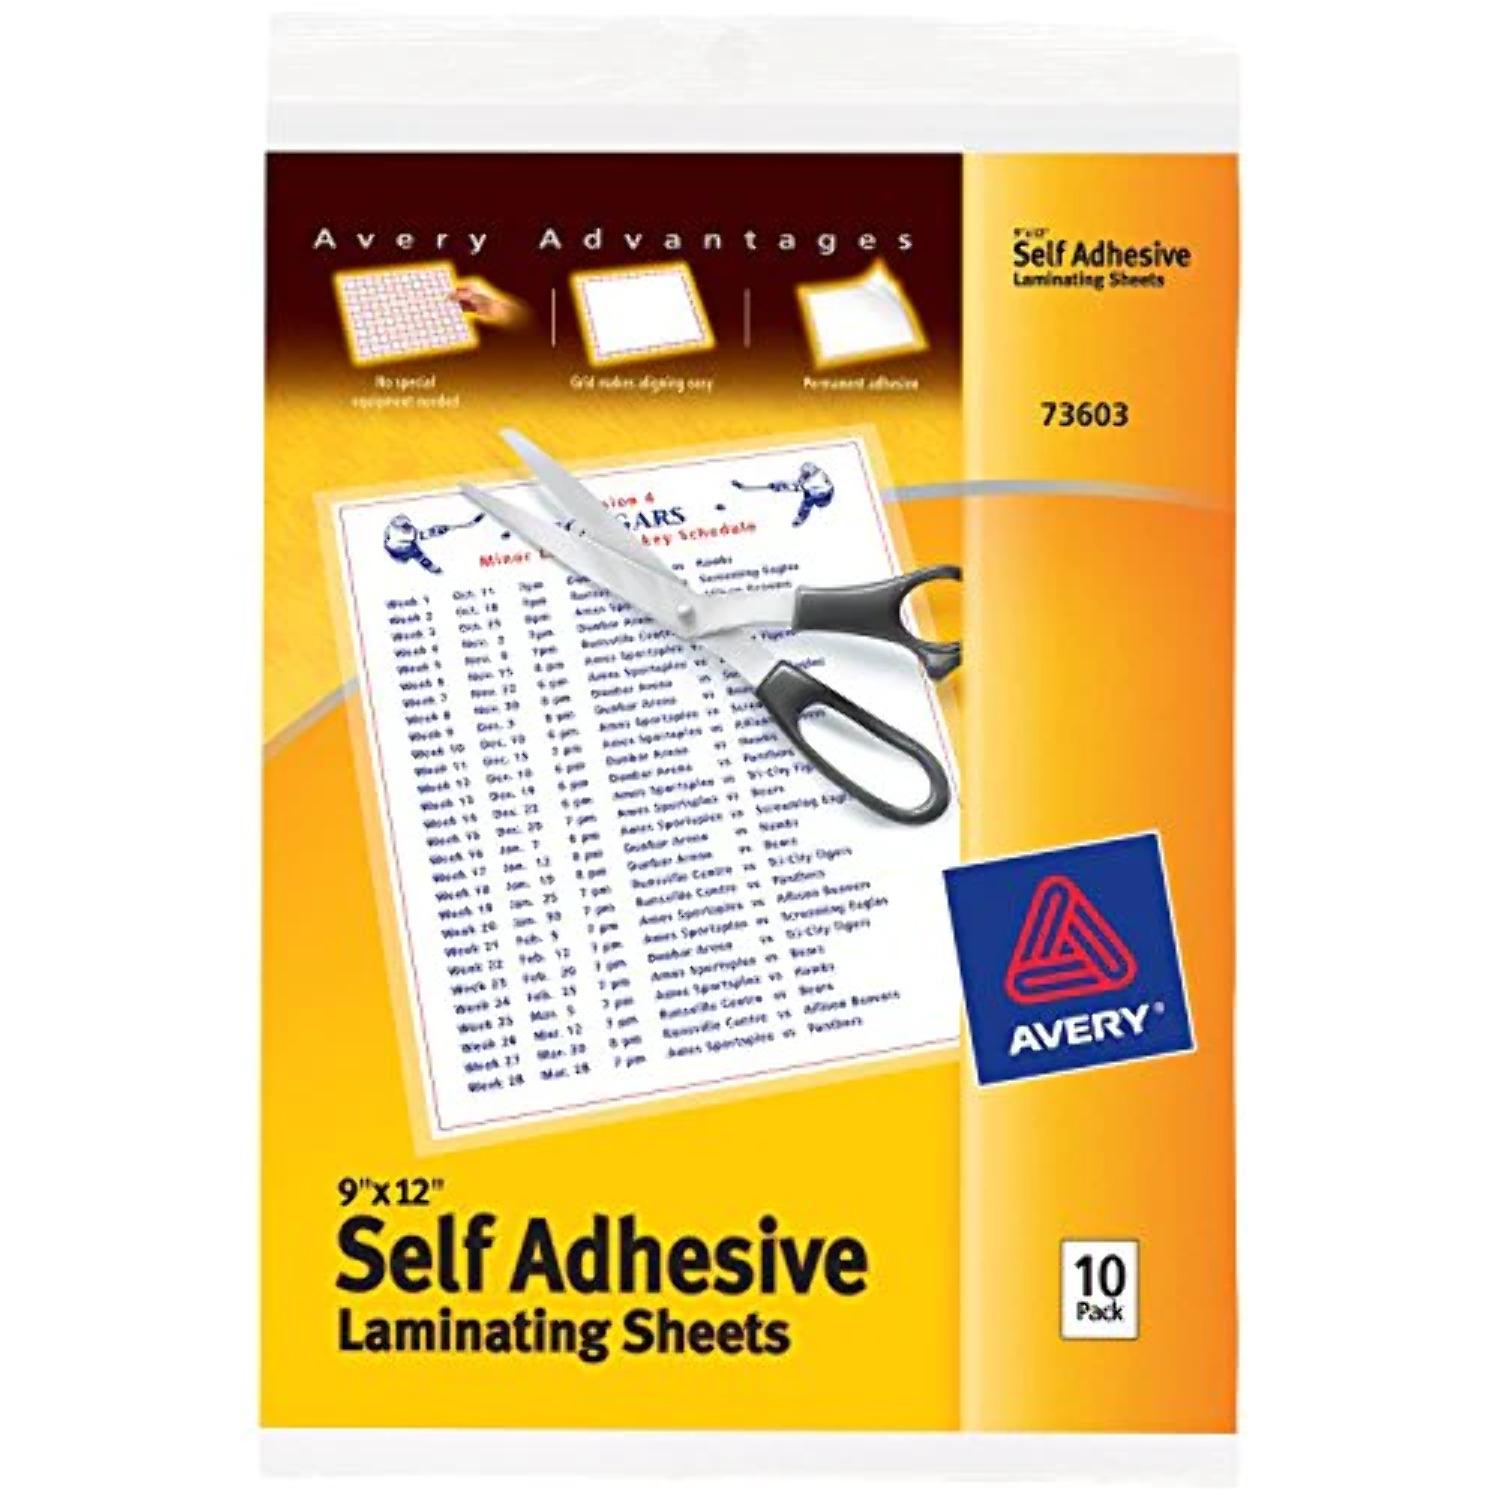 Avery Self-Adhesive Laminating Sheets, 9 x 12, Permanent Adhesive, 10 Clear  Laminating Sheets (73603)